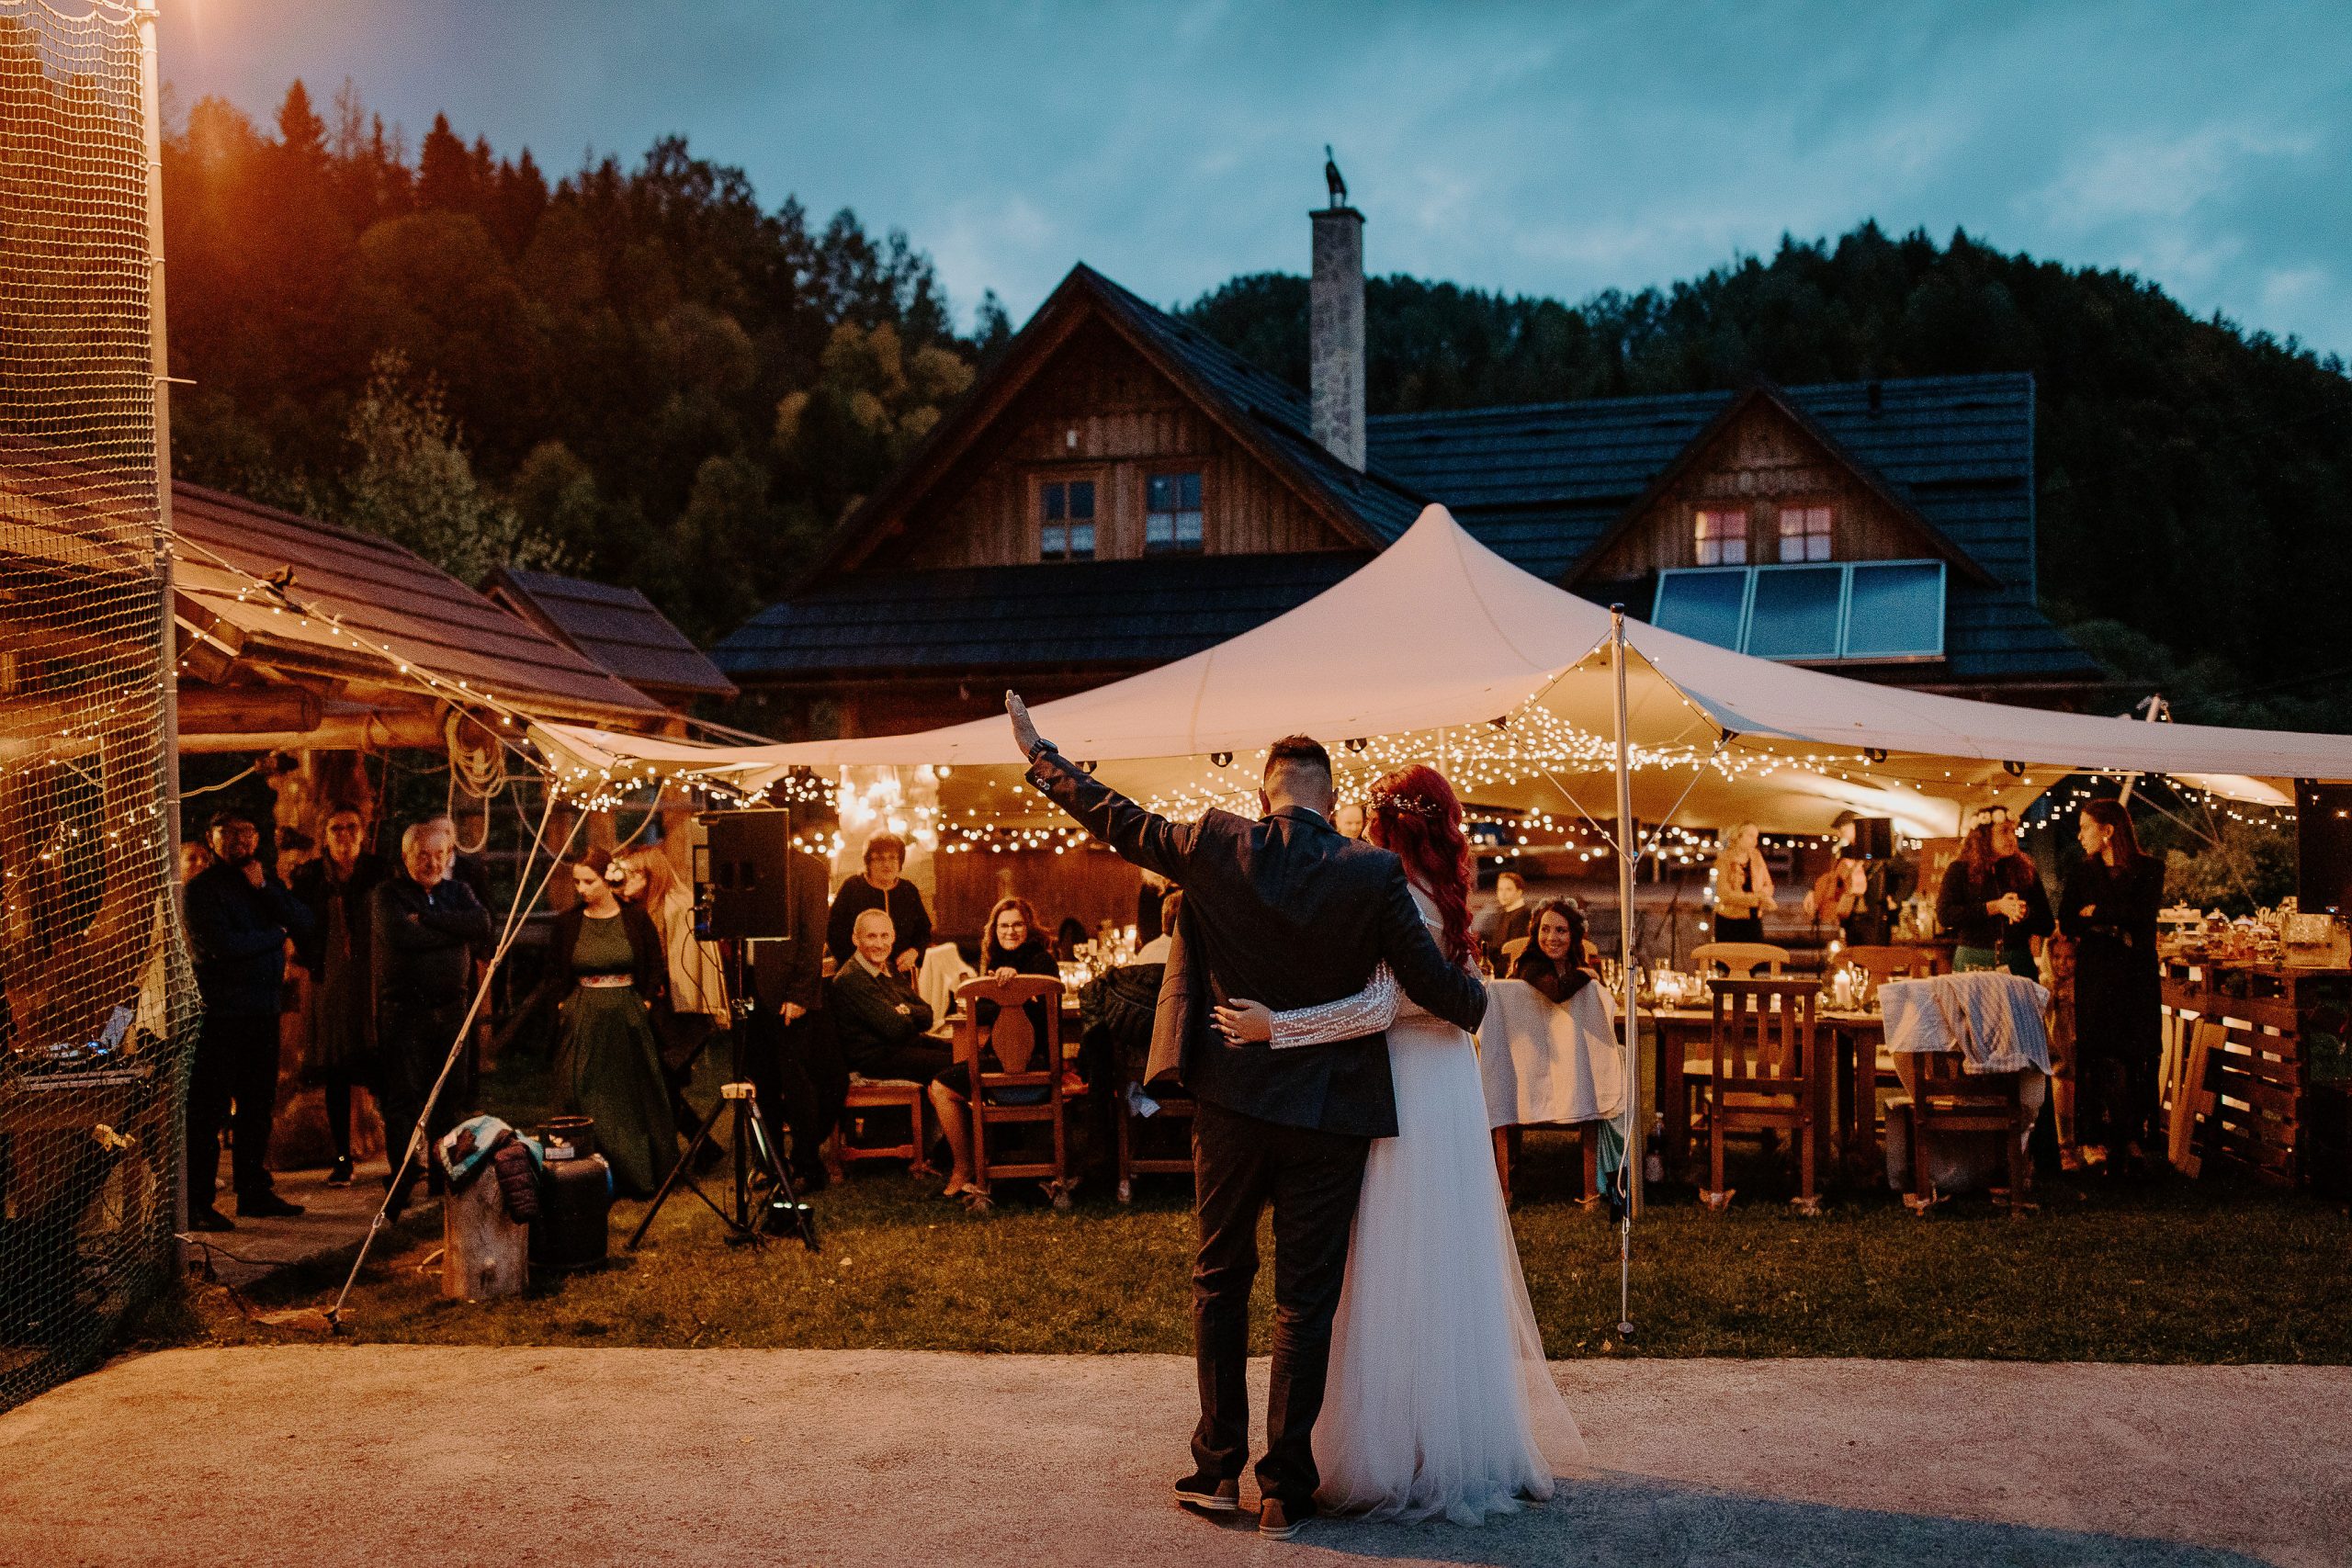 Susan&Sis decor – rozpravkova lesna svadba – blog o prirodnej svadbe – svadba MEMO photo agency – Eri a Matt – nahe prestieranie stola, ihlicie a sisky, svetielka,